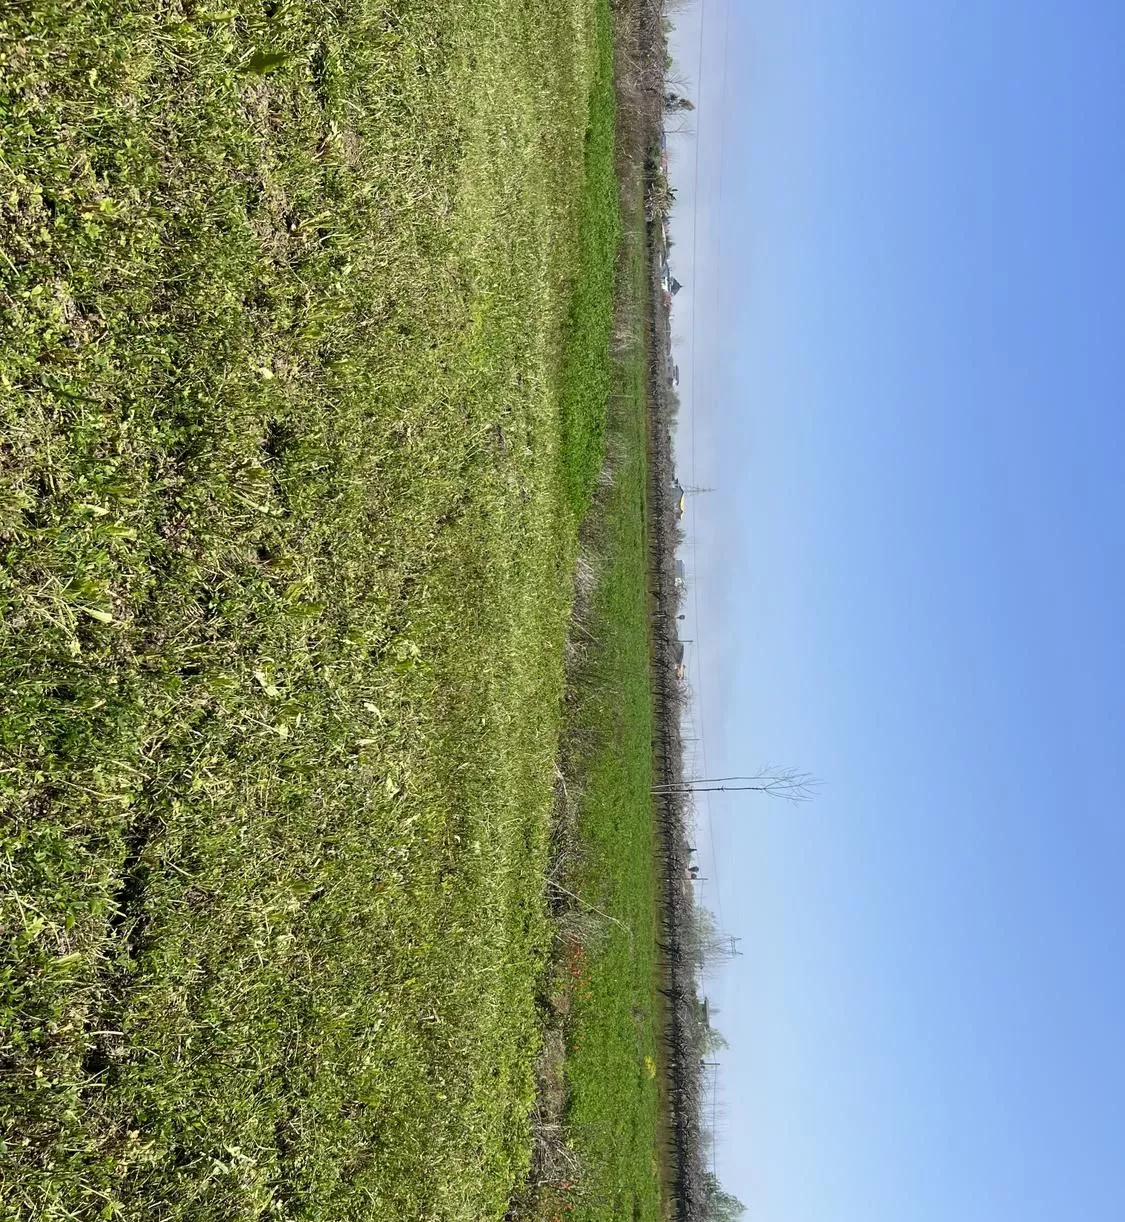 زمین زراعی ب متراژ ۱۰هزاررمتر در مازندران تنکابن